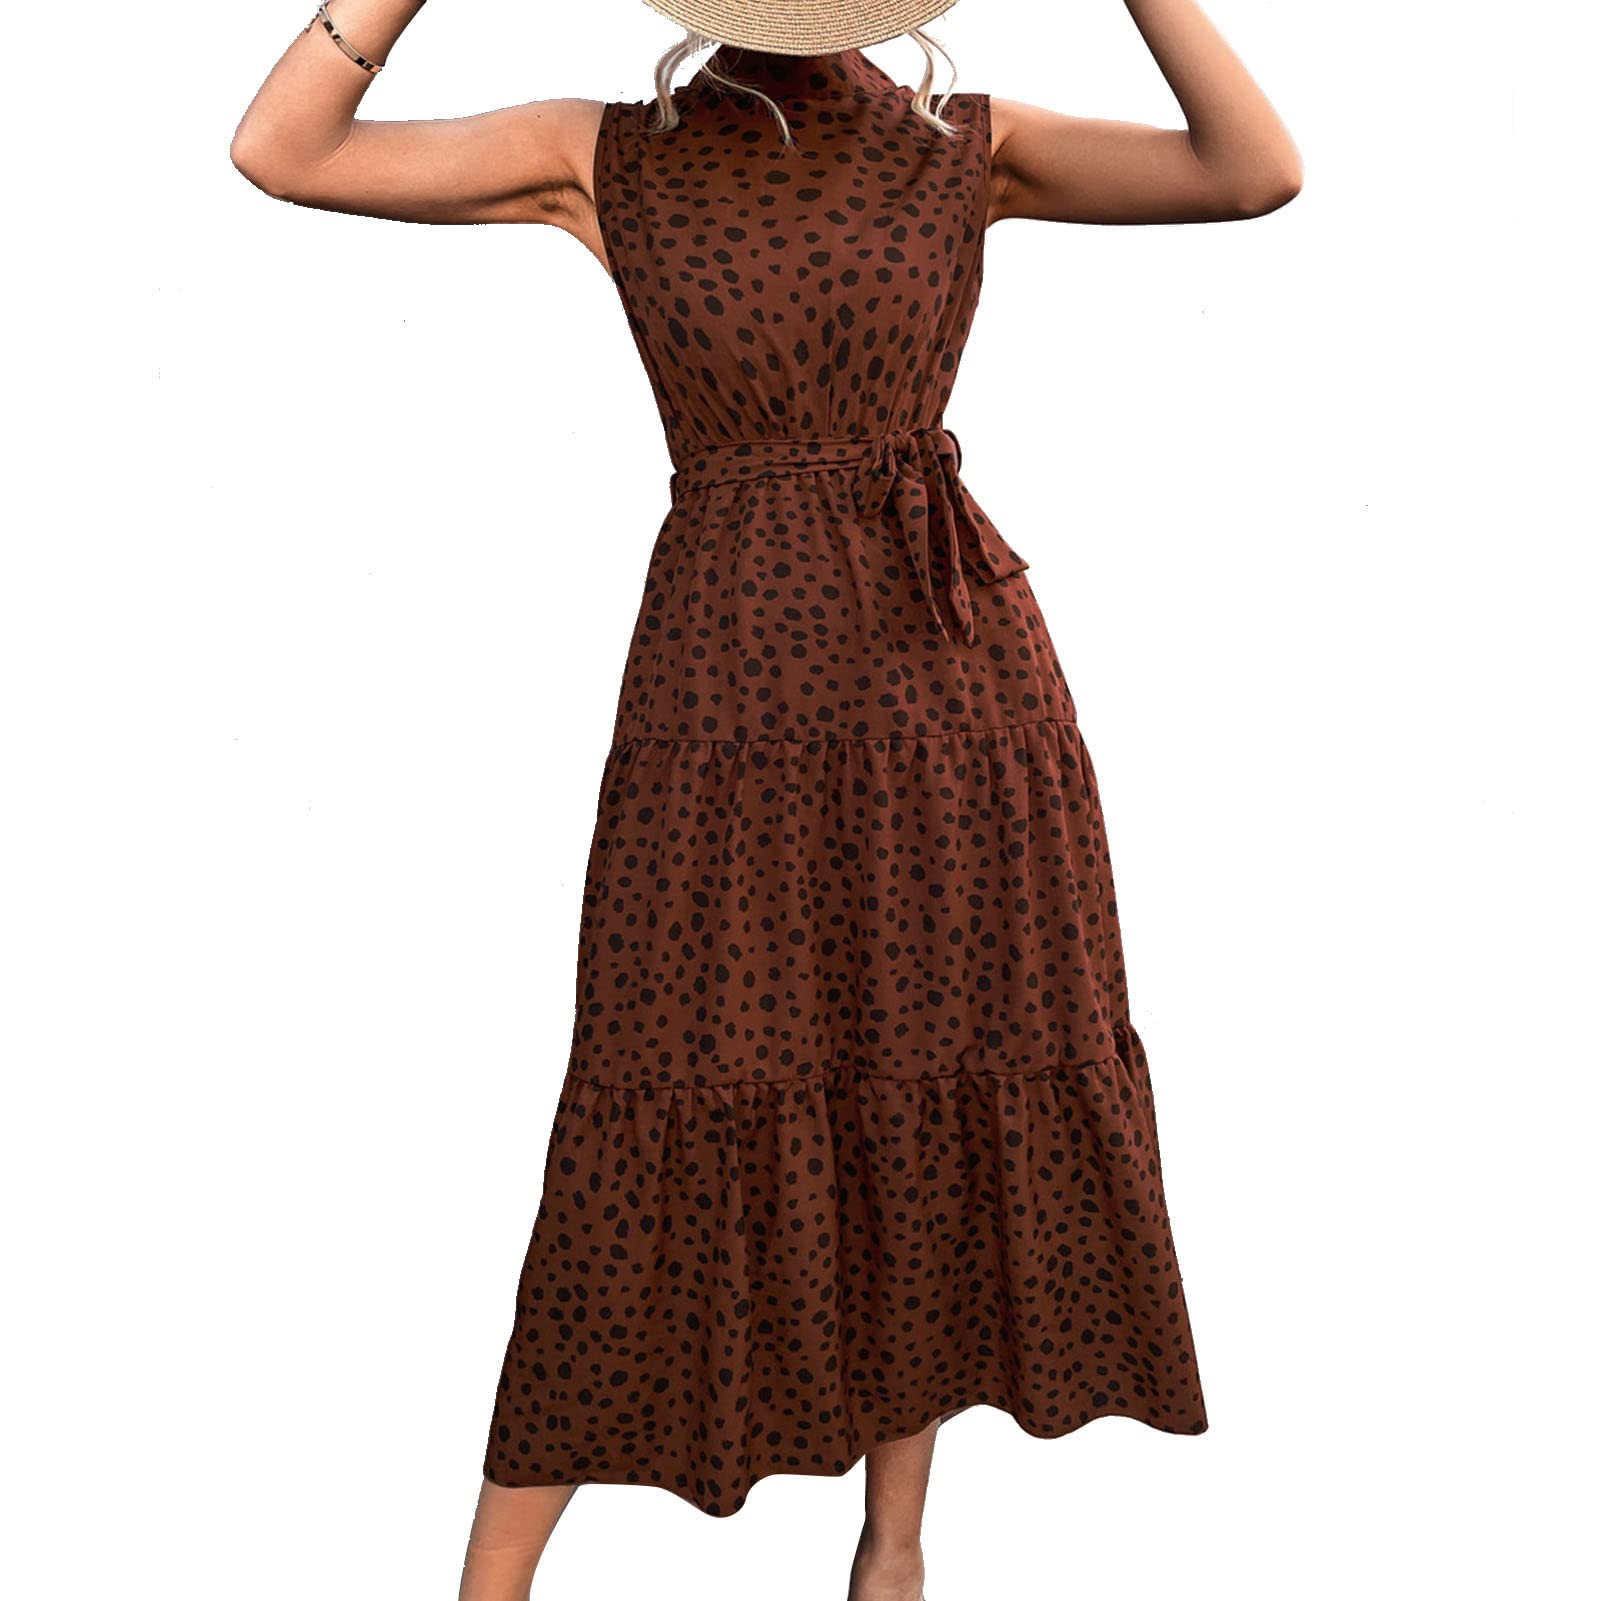 Ausla Damen Kleid Sommer Hohe Taille Stehkragen Schickes, Lässiges Kleid ärmelloses Polka Dot Midi-Länge Partykleid mit Gürtel, Kragenweite 4,5 cm(L-Kaffee)